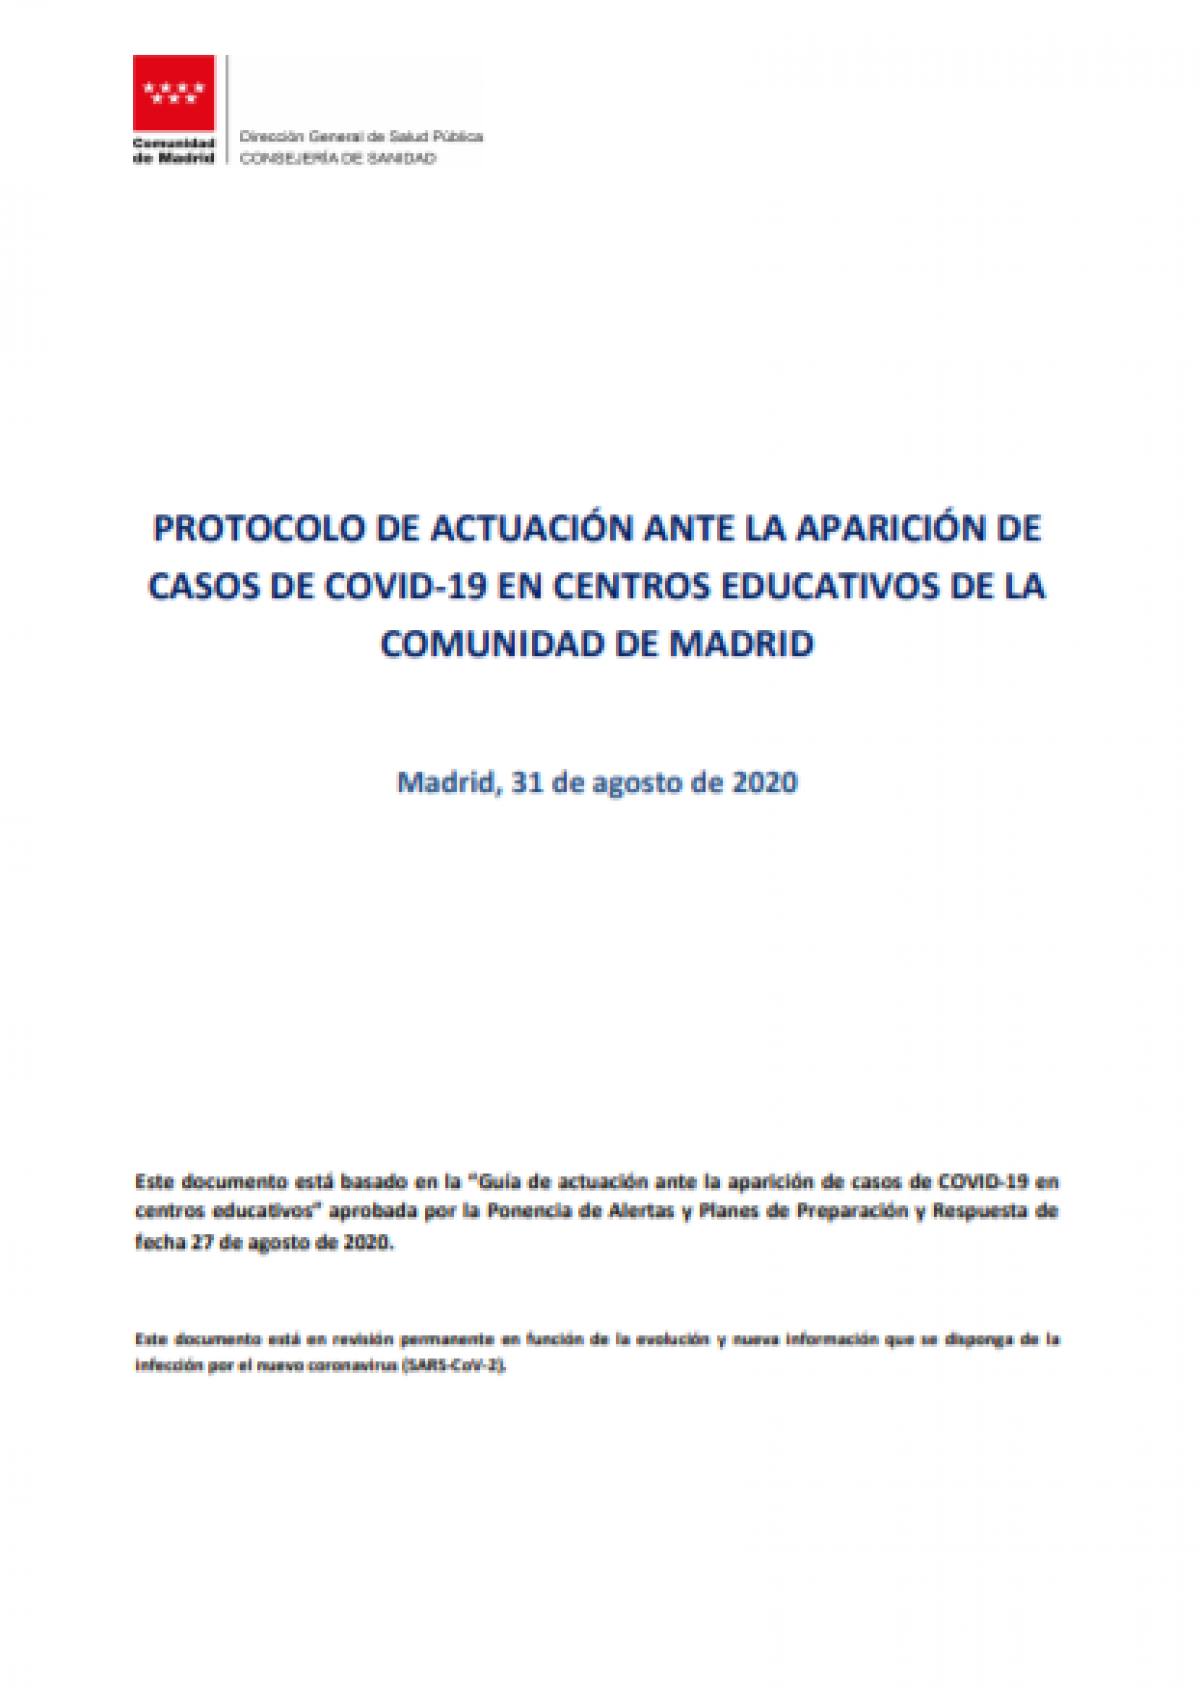 PROTOCOLO DE ACTUACIÓN ANTE LA APARICIÓN DE CASOS DE COVID-19 EN CENTROS EDUCATIVOS DE LA COMUNIDAD DE MADRID